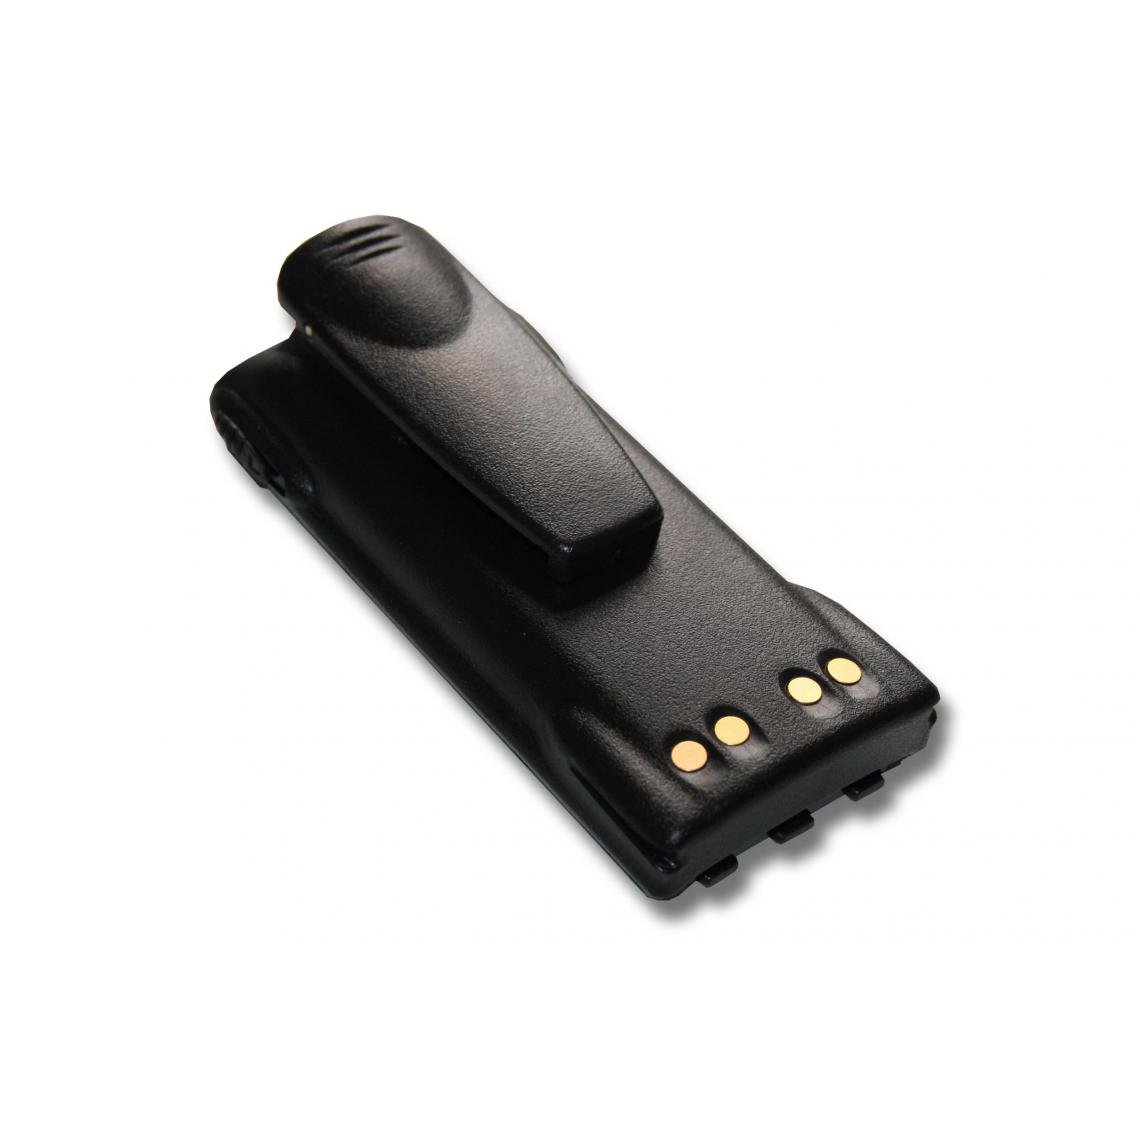 Vhbw - vhbw Batterie remplacement pour Motorola PMNN4158, PMNN4158AR pour radio talkie-walkie (1500mAh, 7,2V, NiMH) - avec clip de ceinture - Autres accessoires smartphone